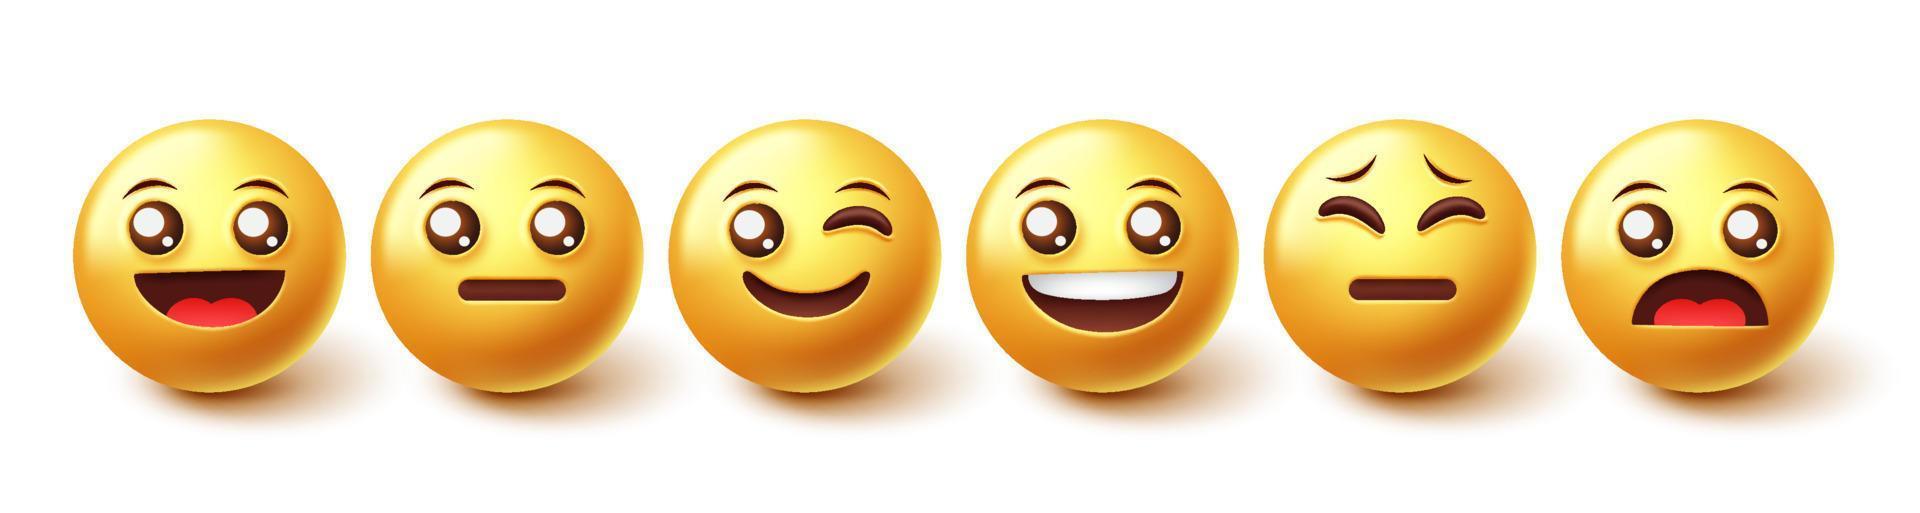 conjunto de vetores de caracteres emoji. emoticons expressão feliz, alegre e triste no elemento de rosto amarelo para coleção facial isolada em fundo branco. ilustração vetorial.